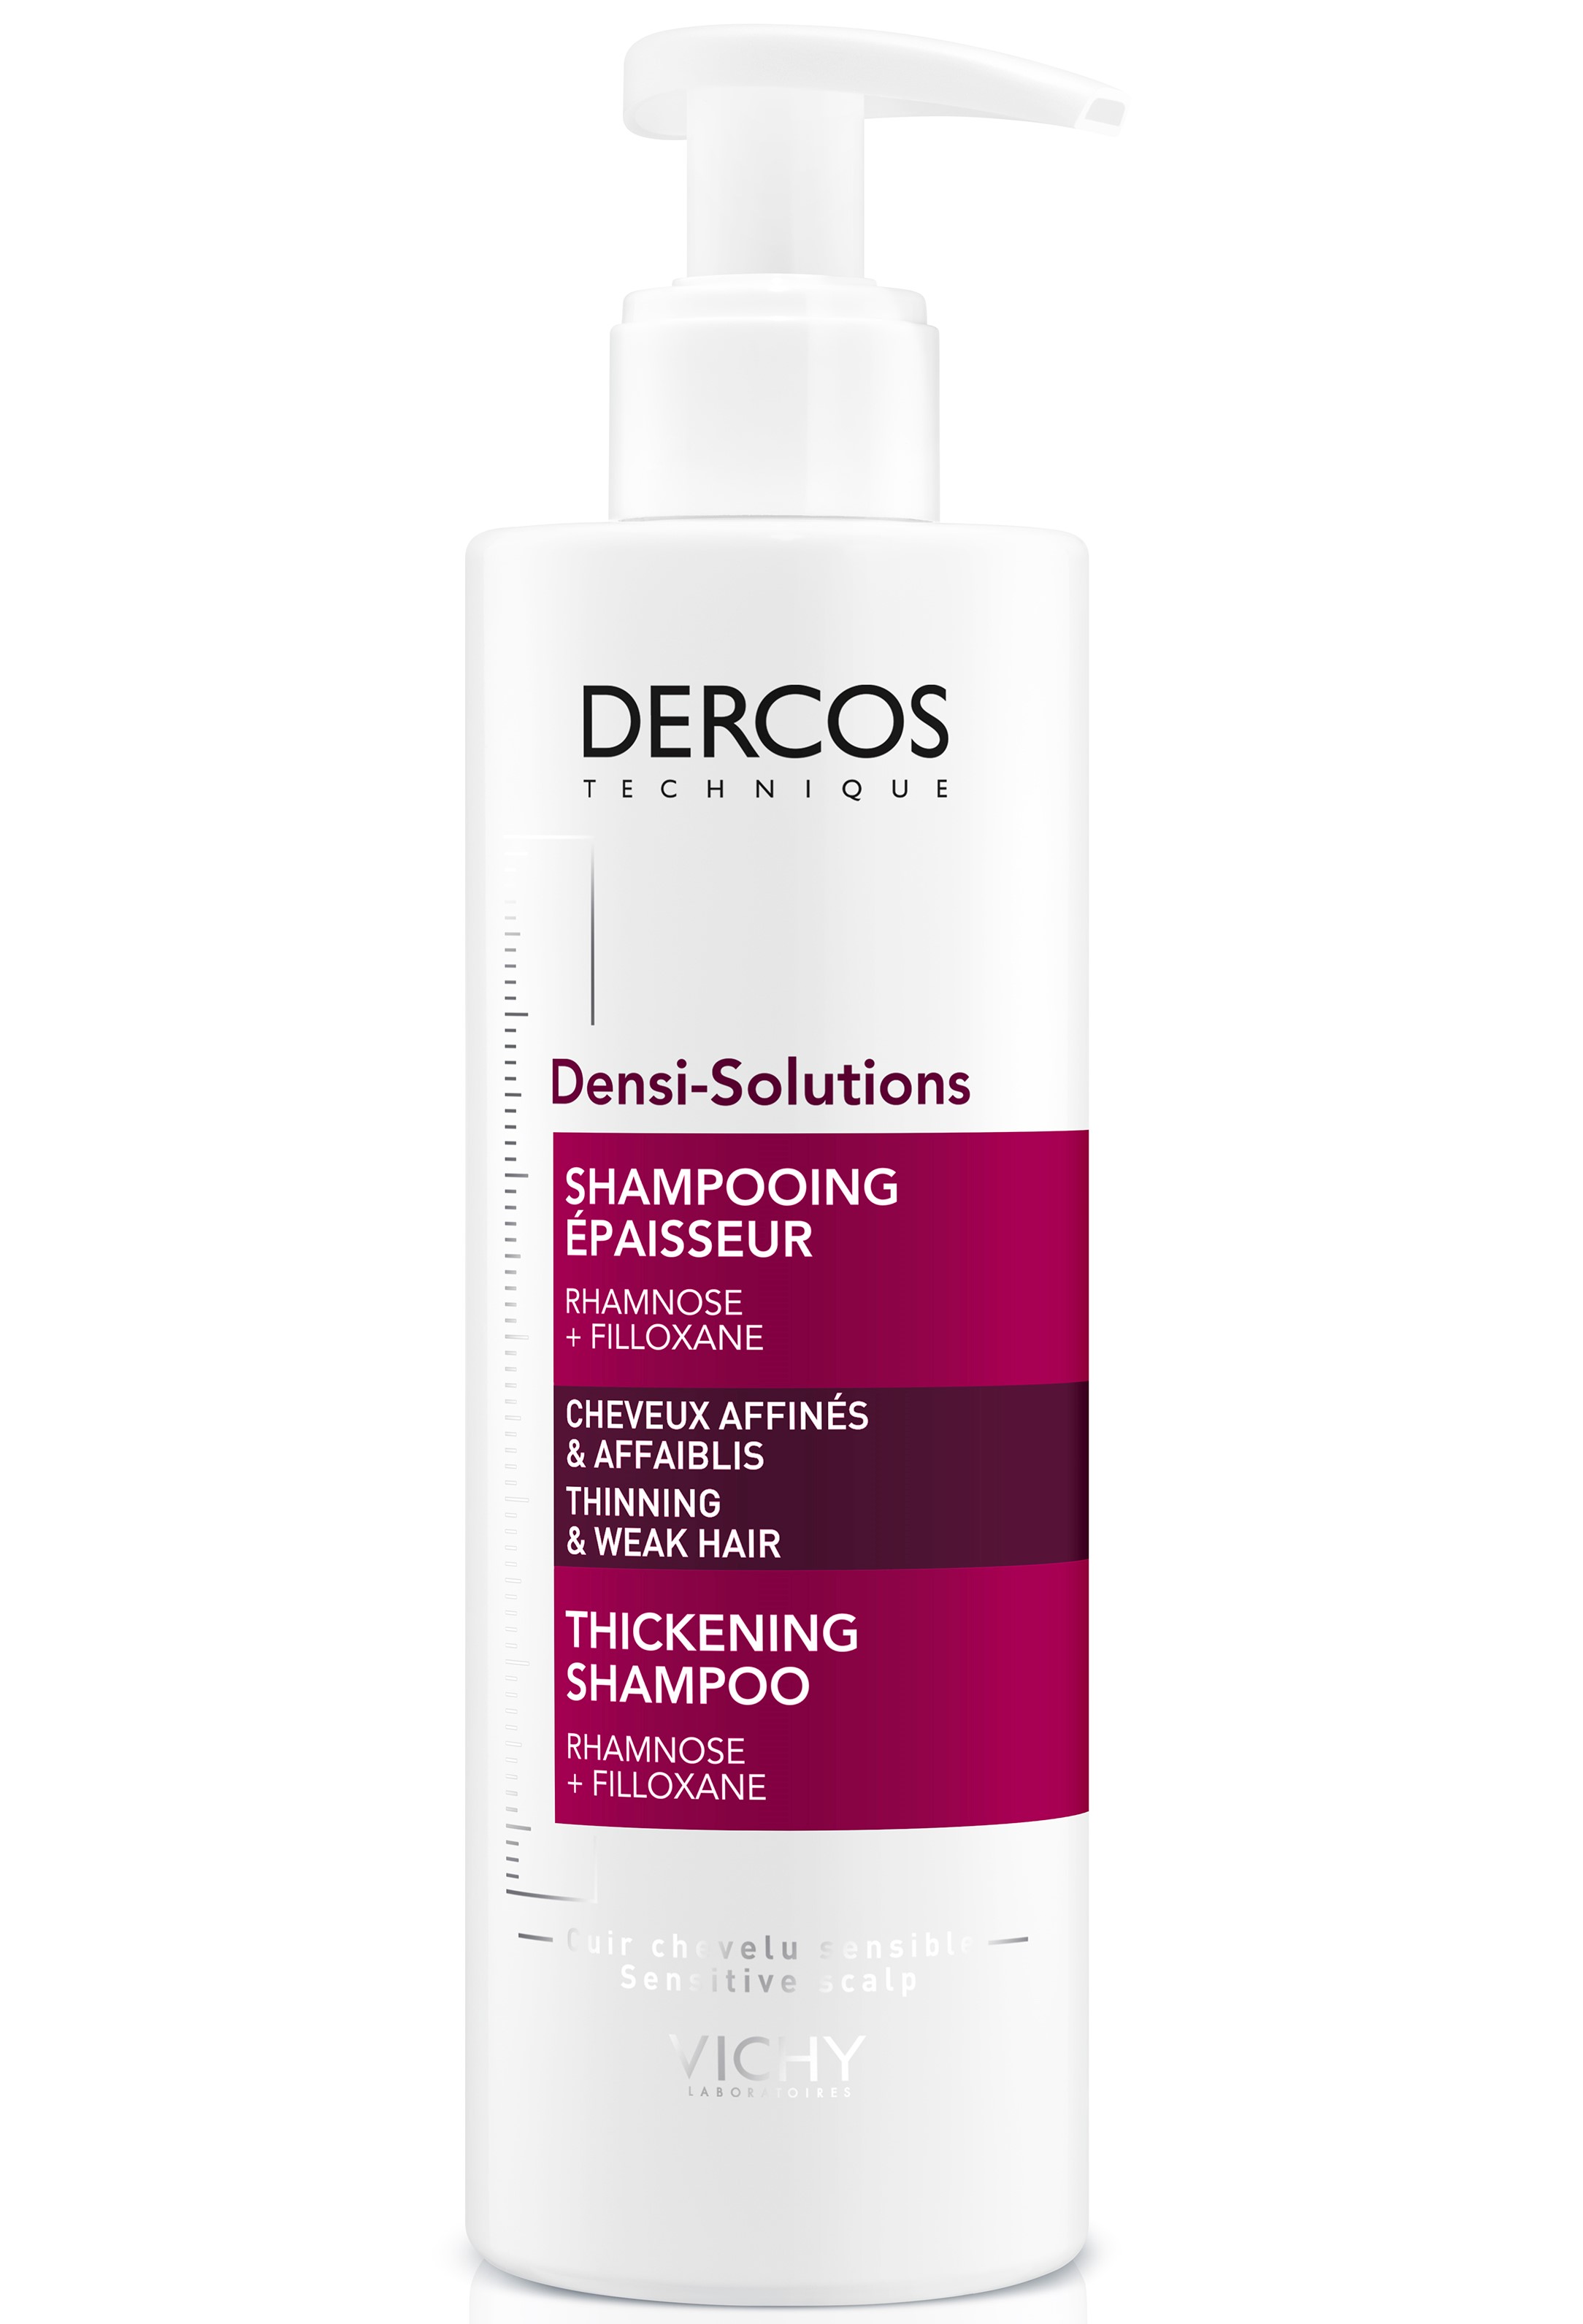 Шампунь Vichy Dercos Densi-Solutions для восстановления густоты и объема ослабленных волос, 250 мл - фото 2